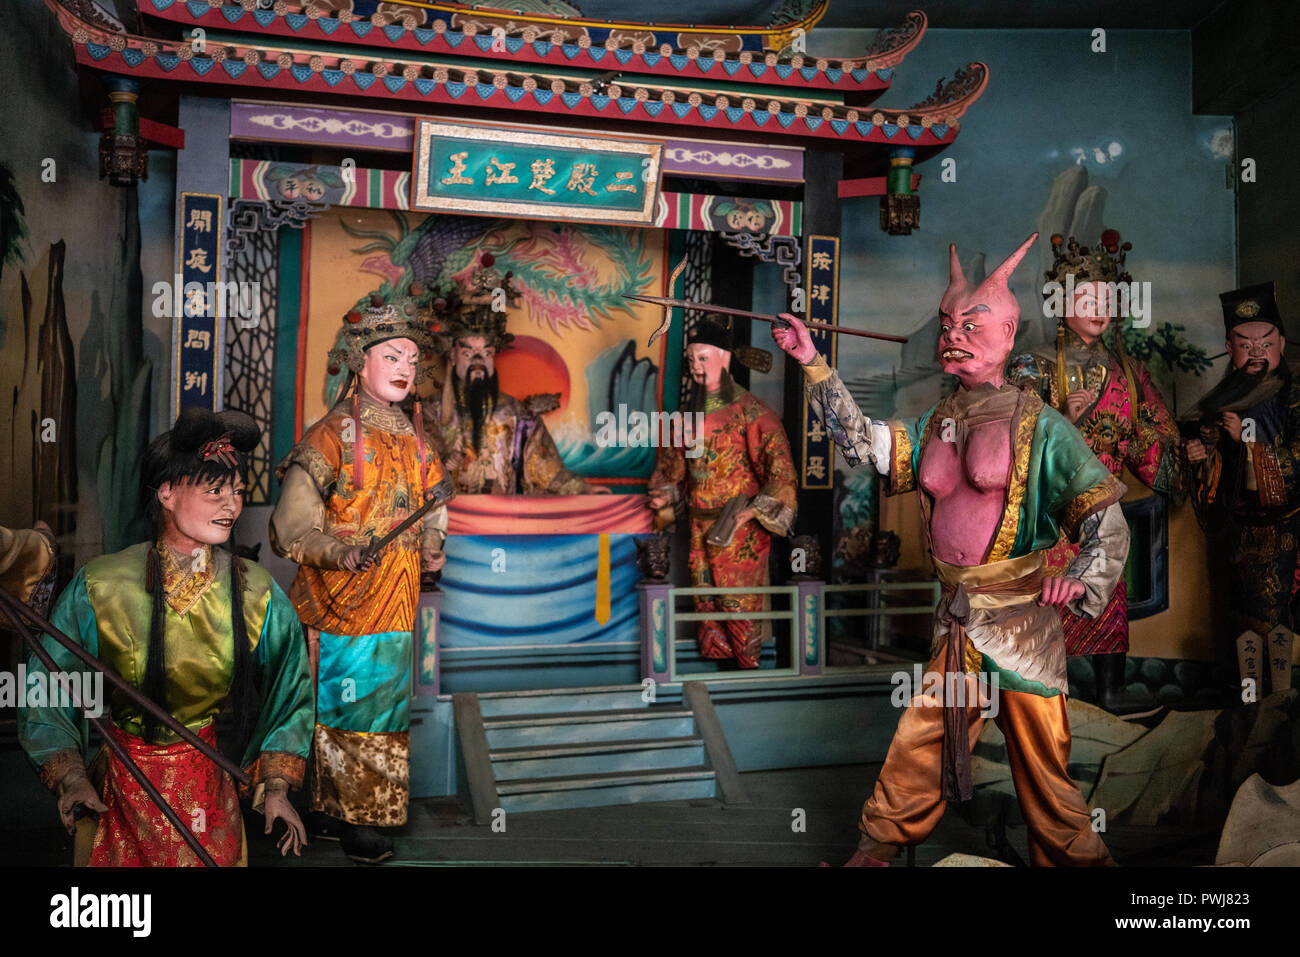 15 February 2018, Changhua Taiwan : Statues inside Nantian bizarre temple in Changhua Taiwan Stock Photo